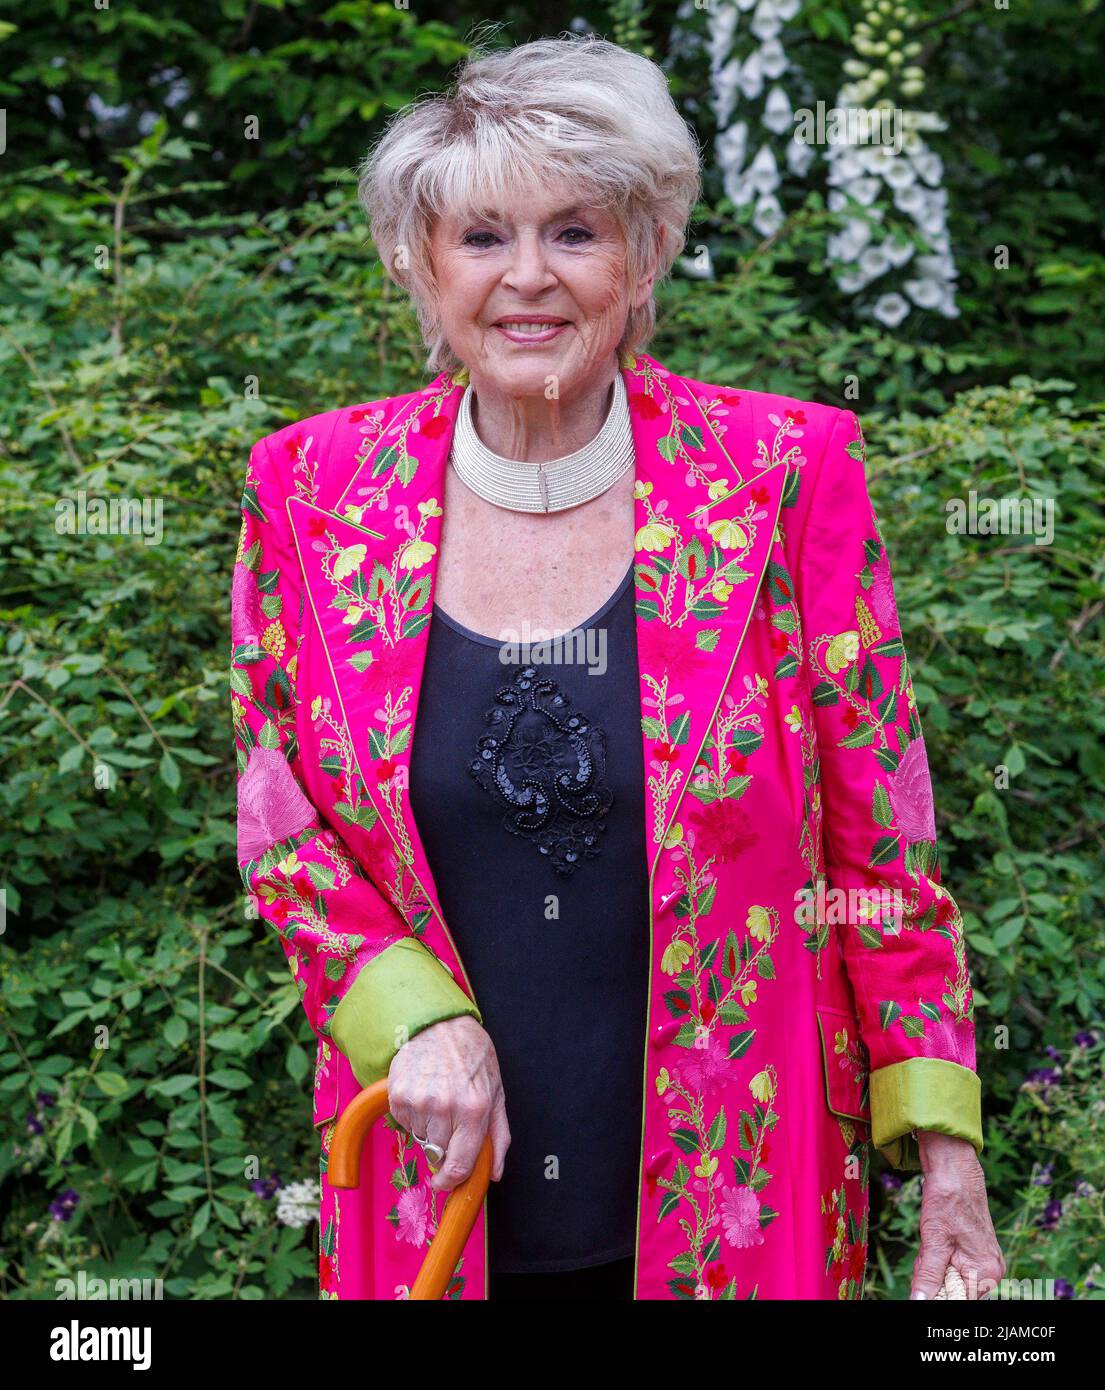 Gloria Hunniford, presentadora de radio y televisión de Irlanda del Norte, en el Salón de Flor Chelsea de RHS. Foto de stock